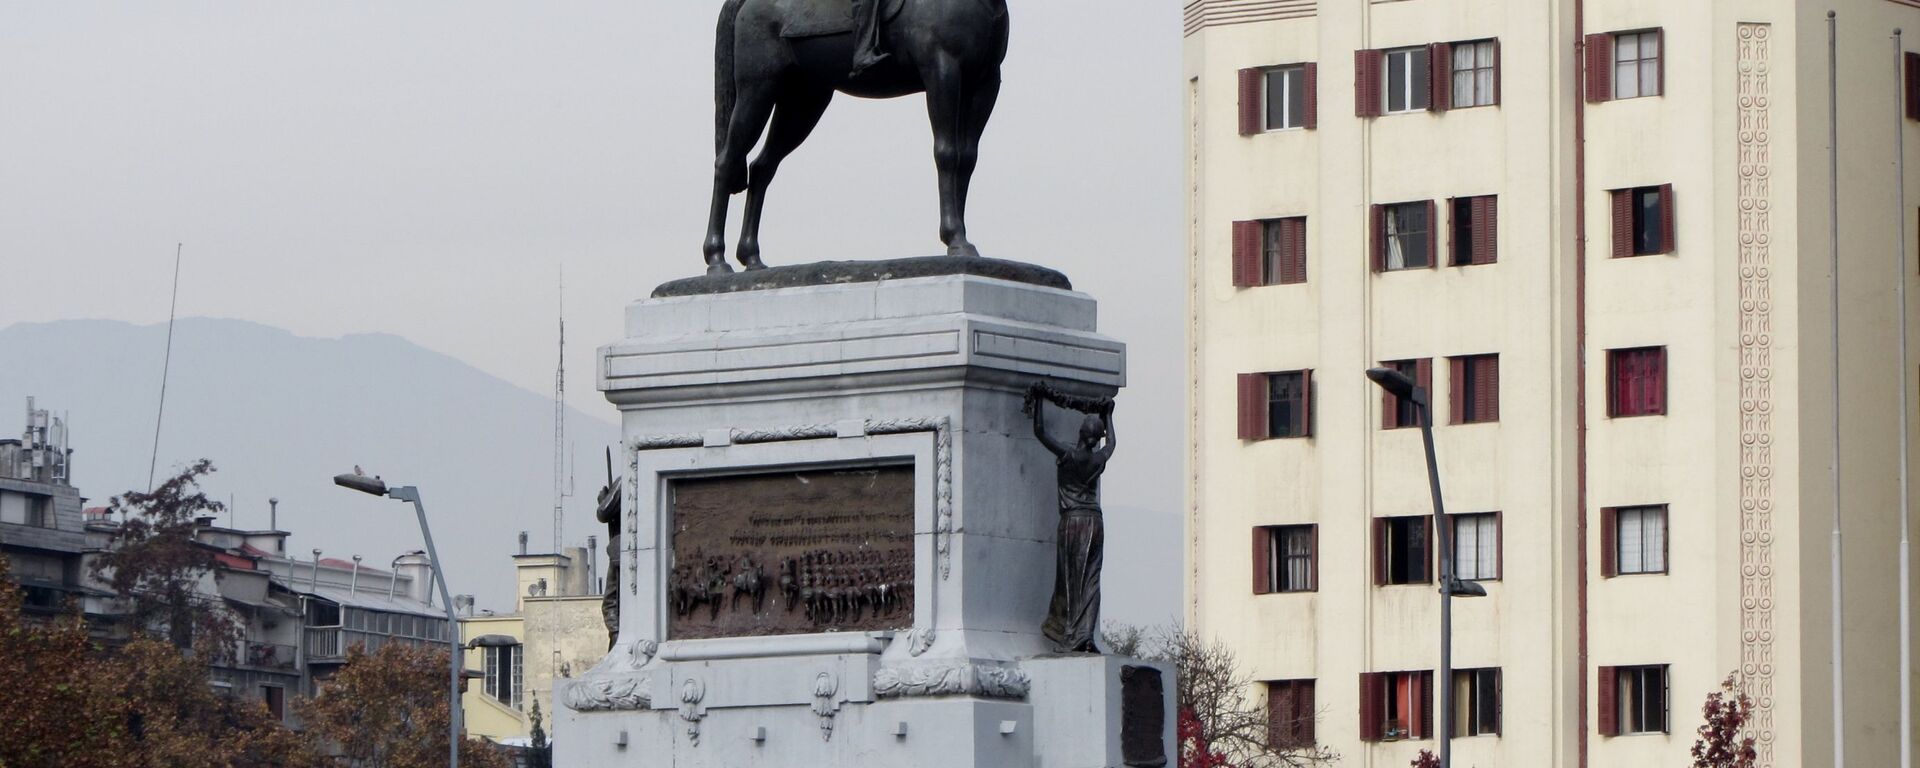 Monumento al general Manuel Baquedano, ubicado en la Plaza Italia en Santiago, Chile - Sputnik Mundo, 1920, 06.03.2021